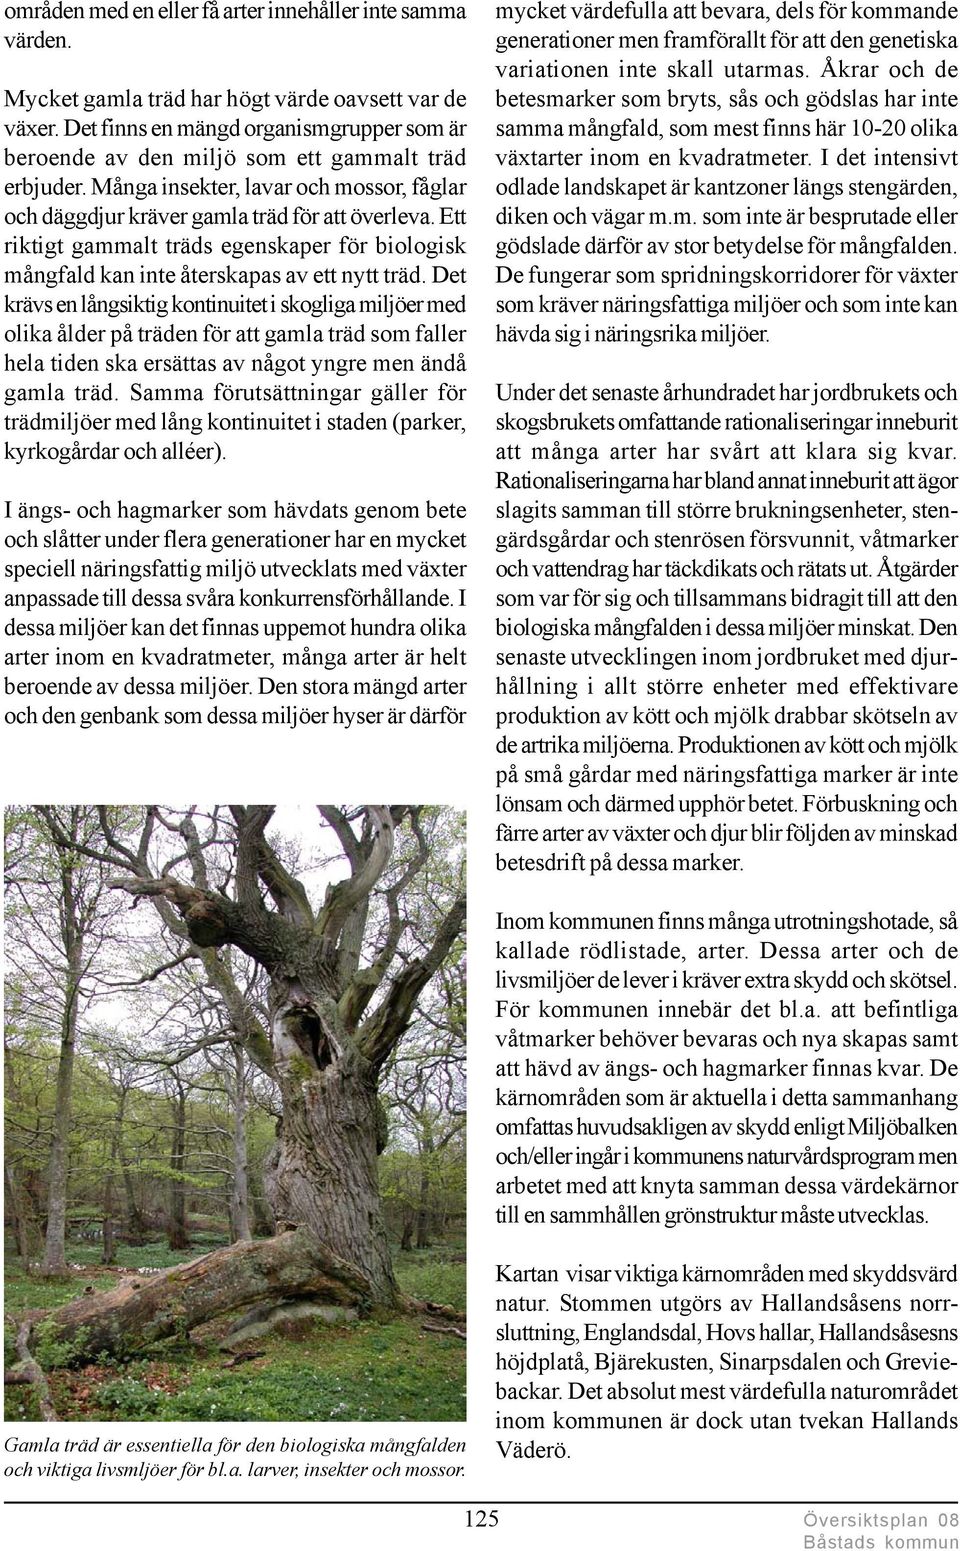 Ett riktigt gammalt träds egenskaper för biologisk mångfald kan inte återskapas av ett nytt träd.